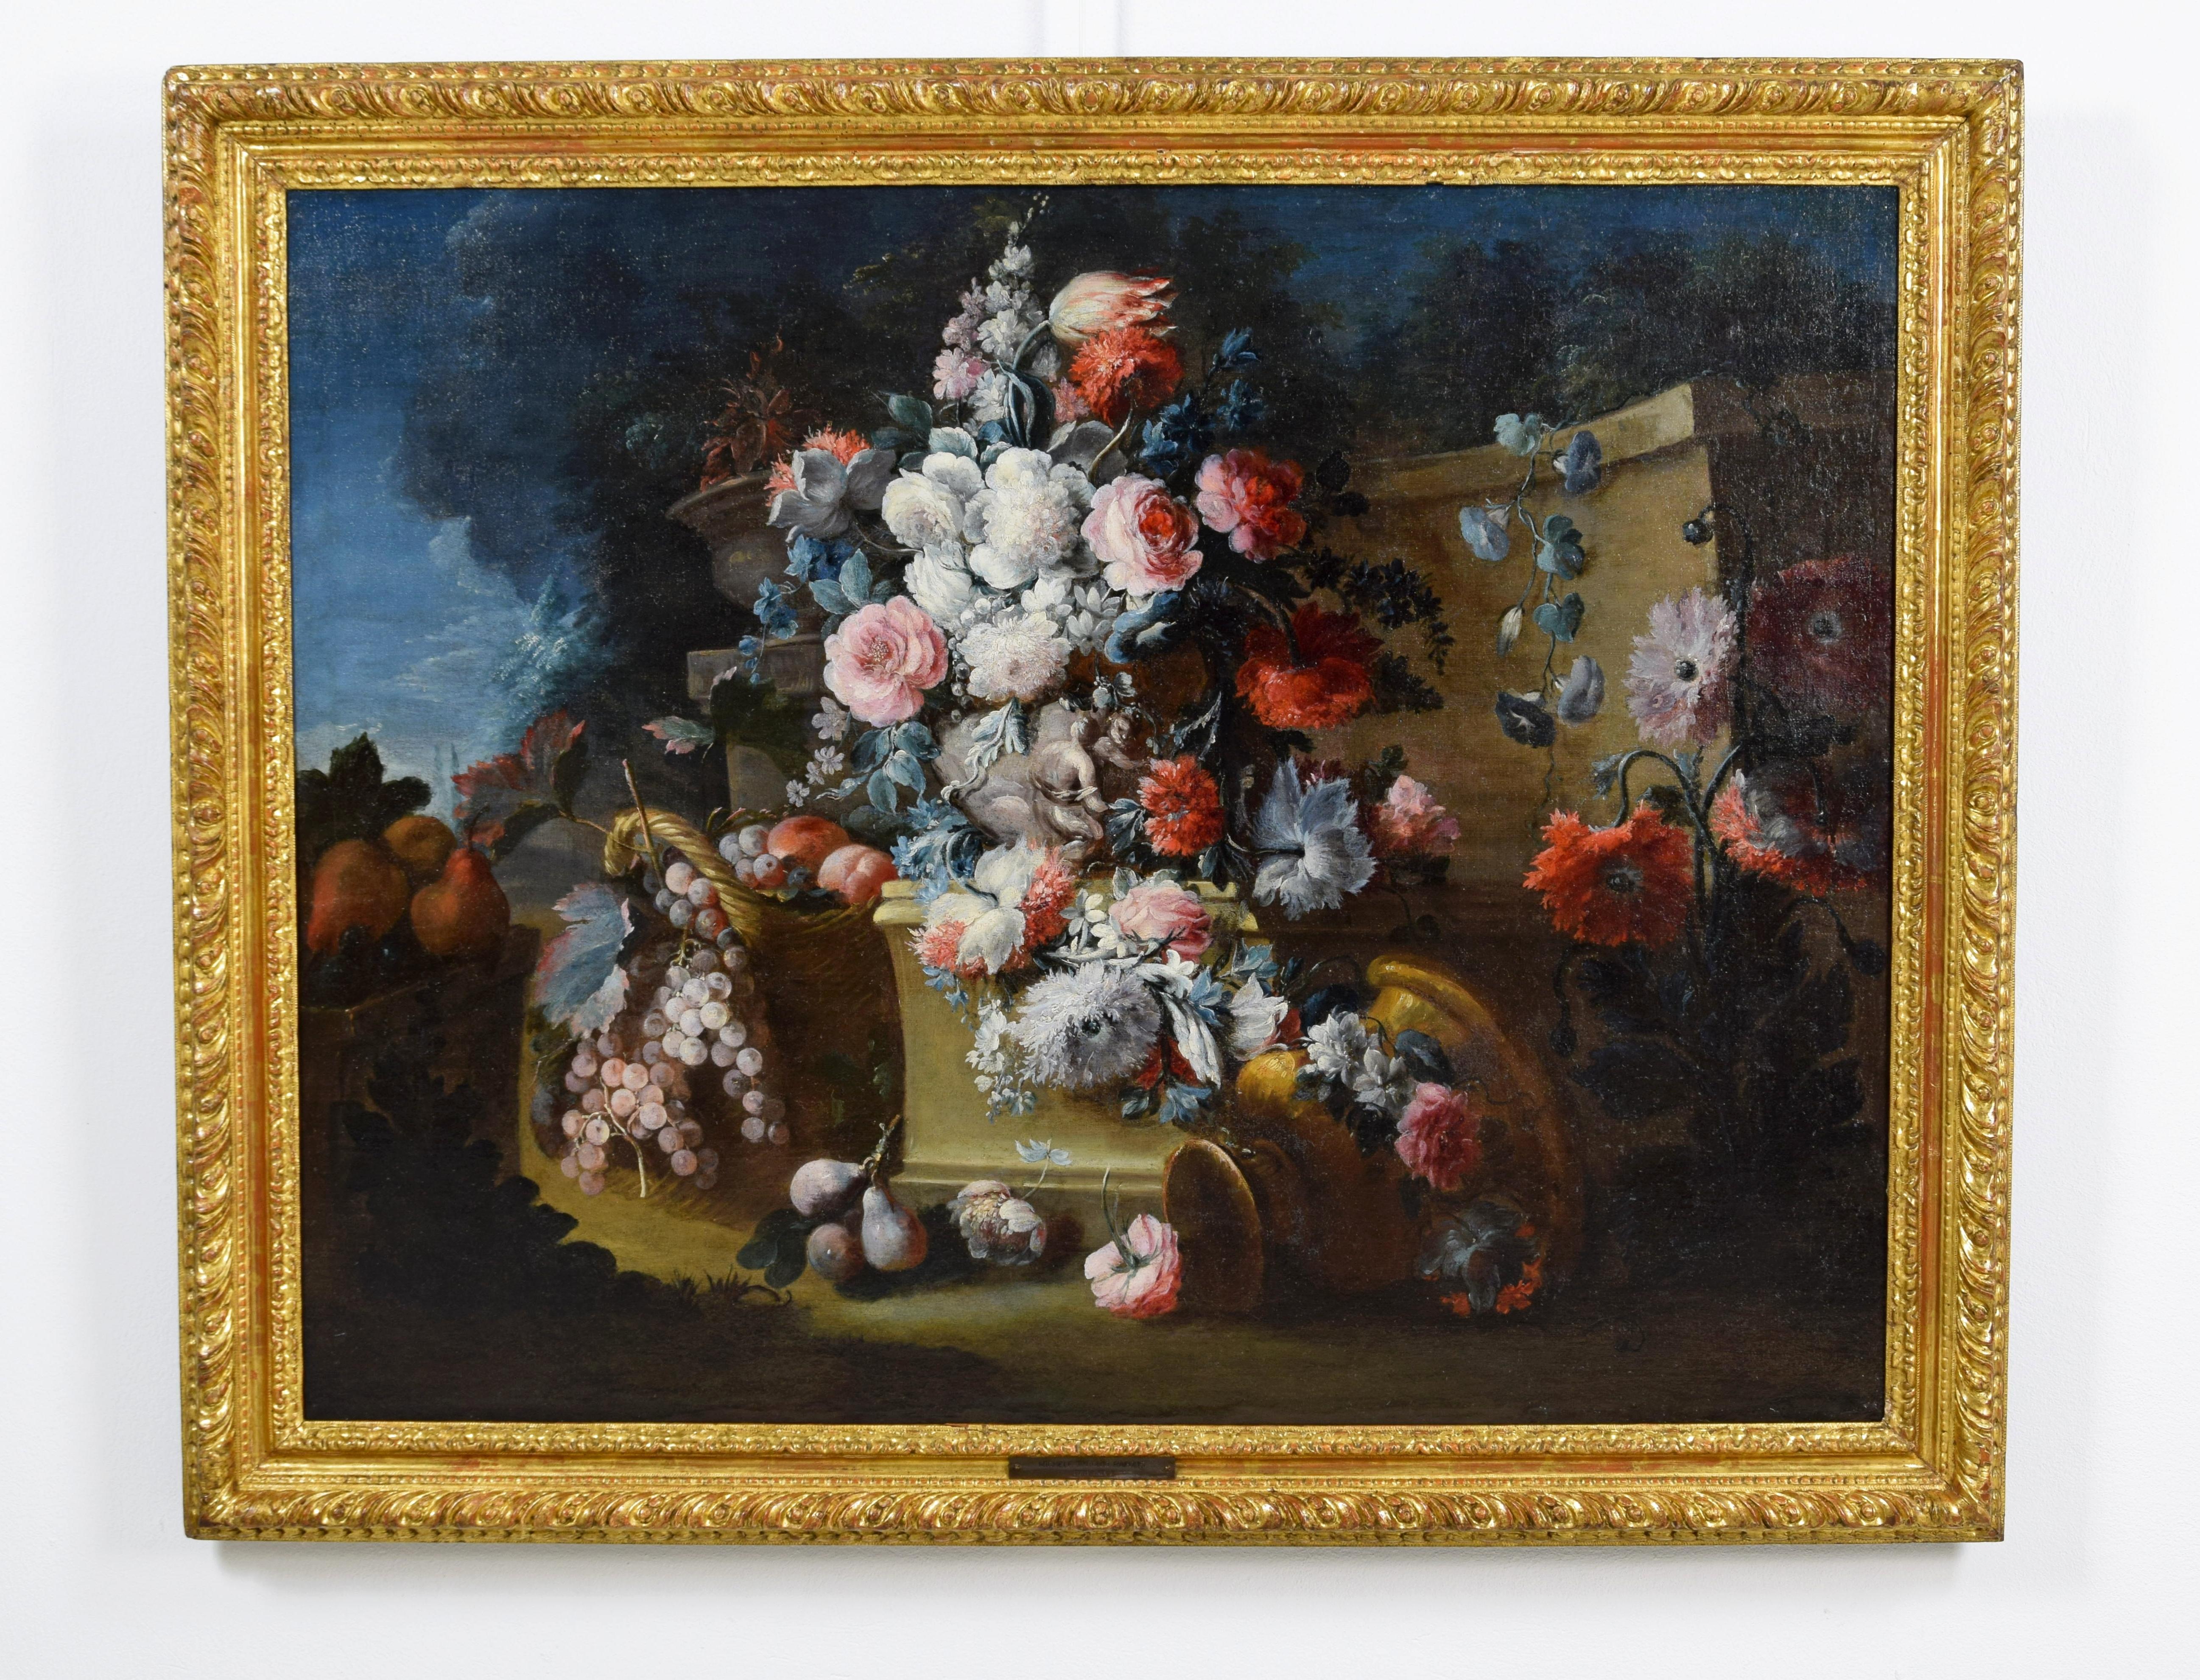 18. Jahrhundert, Italienisches Blumenstillleben von Michele Antonio Rapos (Italien 1733-1819)

Die Leinwand, von feiner Verarbeitung und unter guten Bedingungen der Wartung, stellt ein Stillleben mit Triumph der Blumen und Früchte in einem offenen